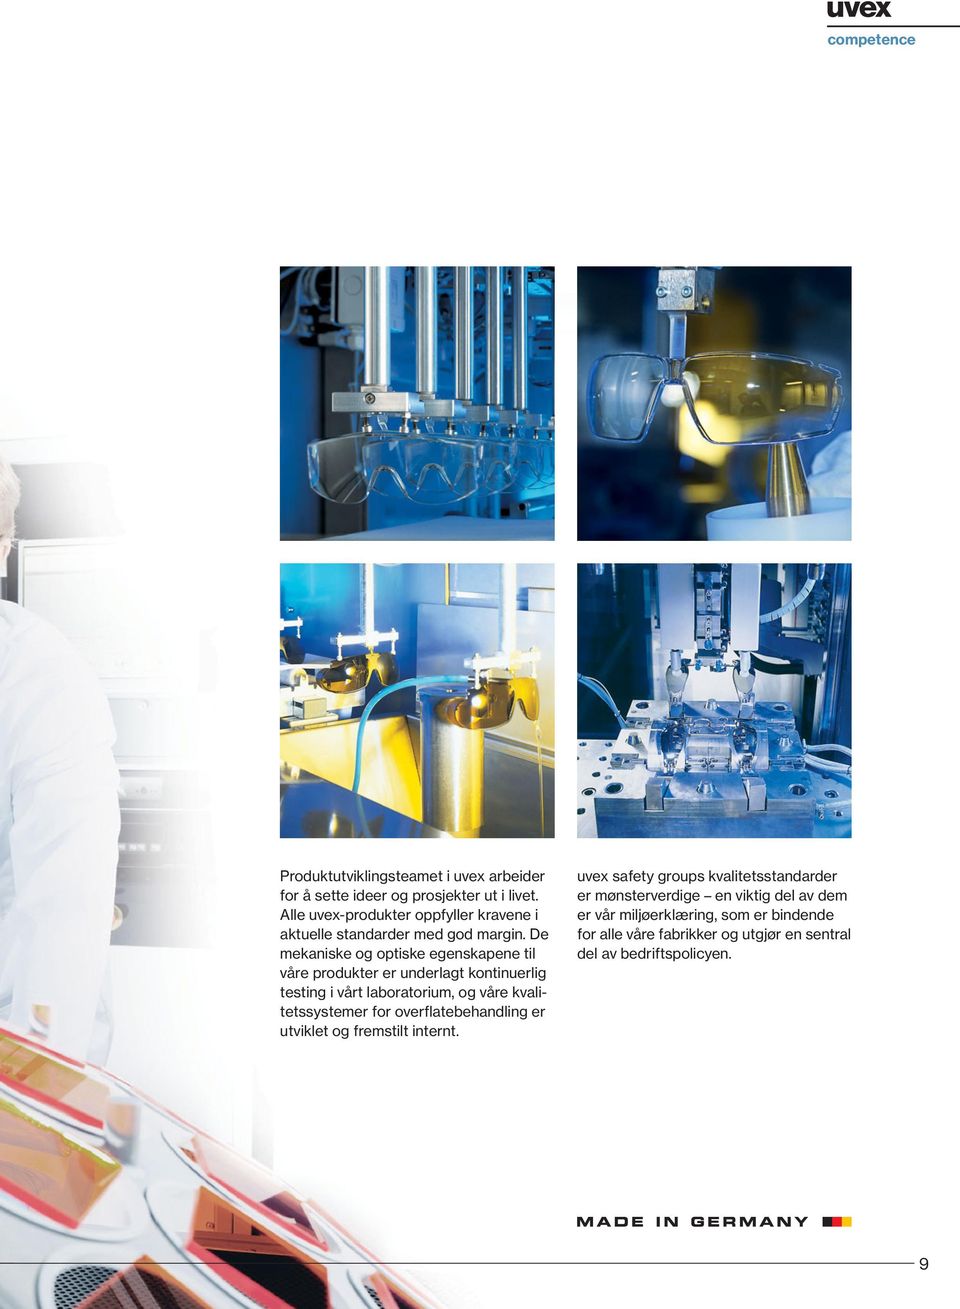 De mekaniske og optiske egenskapene til våre produkter er underlagt kontinuerlig testing i vårt laboratorium, og våre kvalitetssystemer